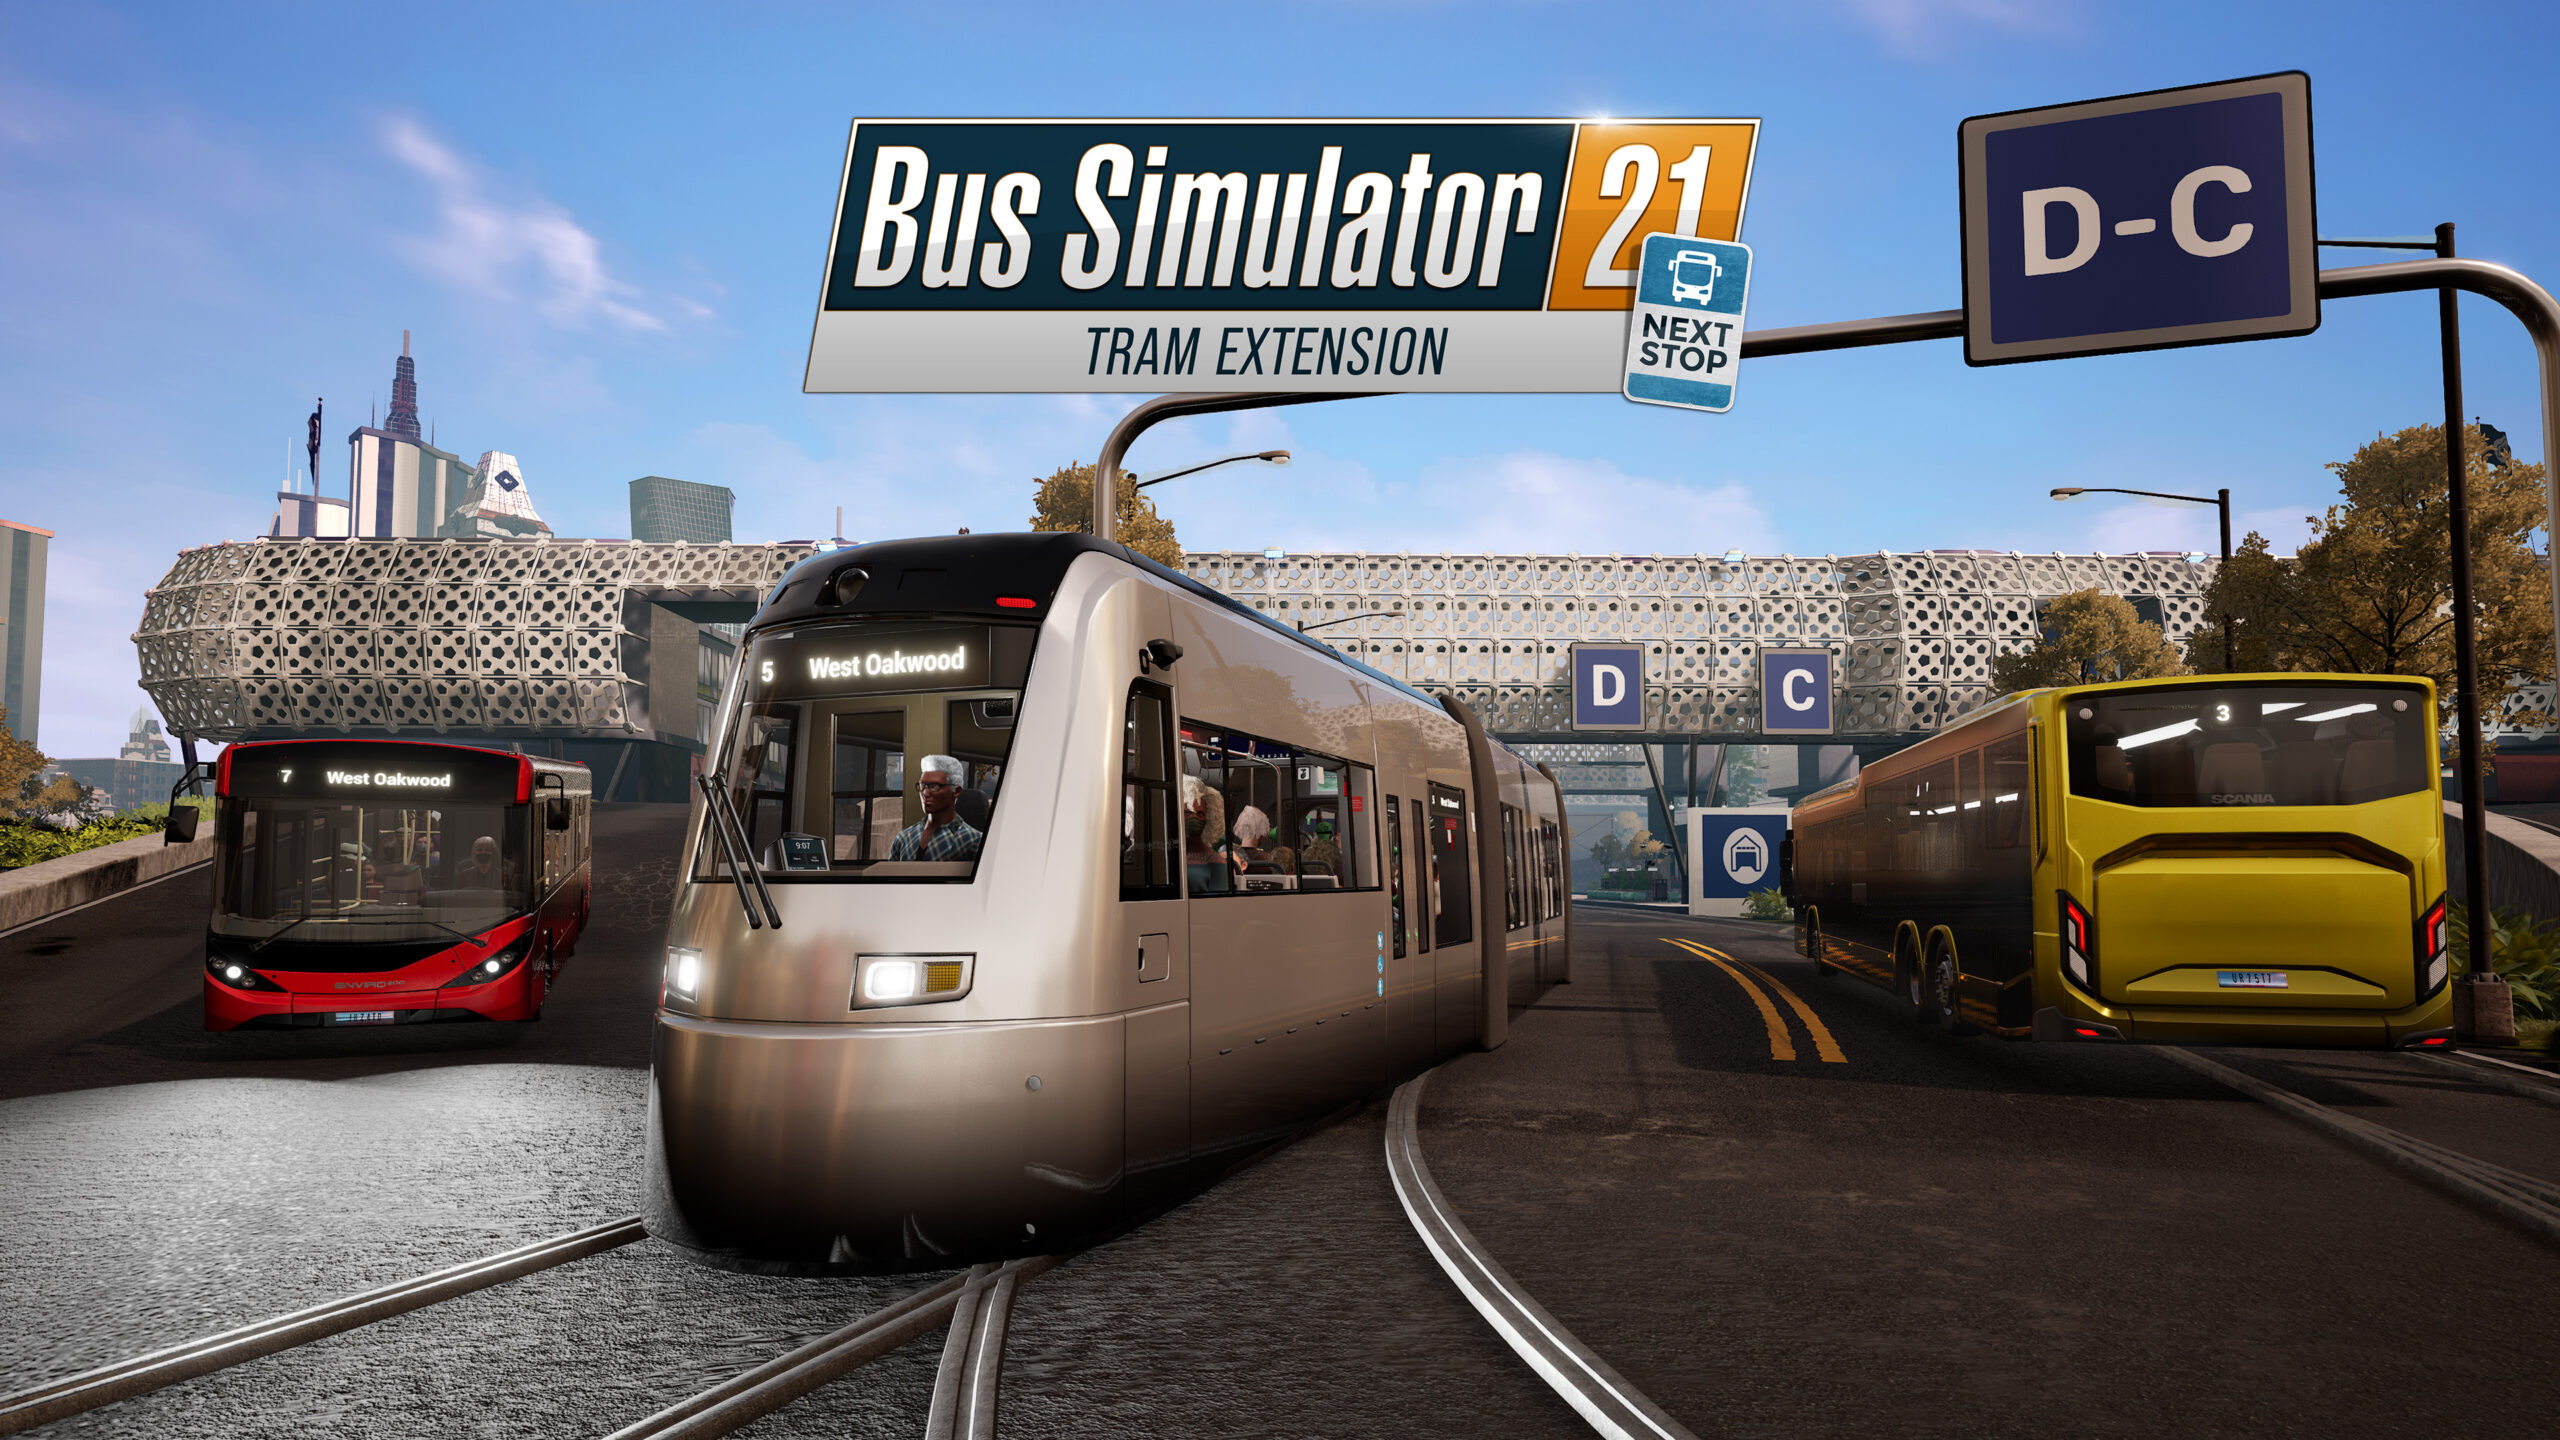 Official Tram de Bus Simulator 21 Next Stop